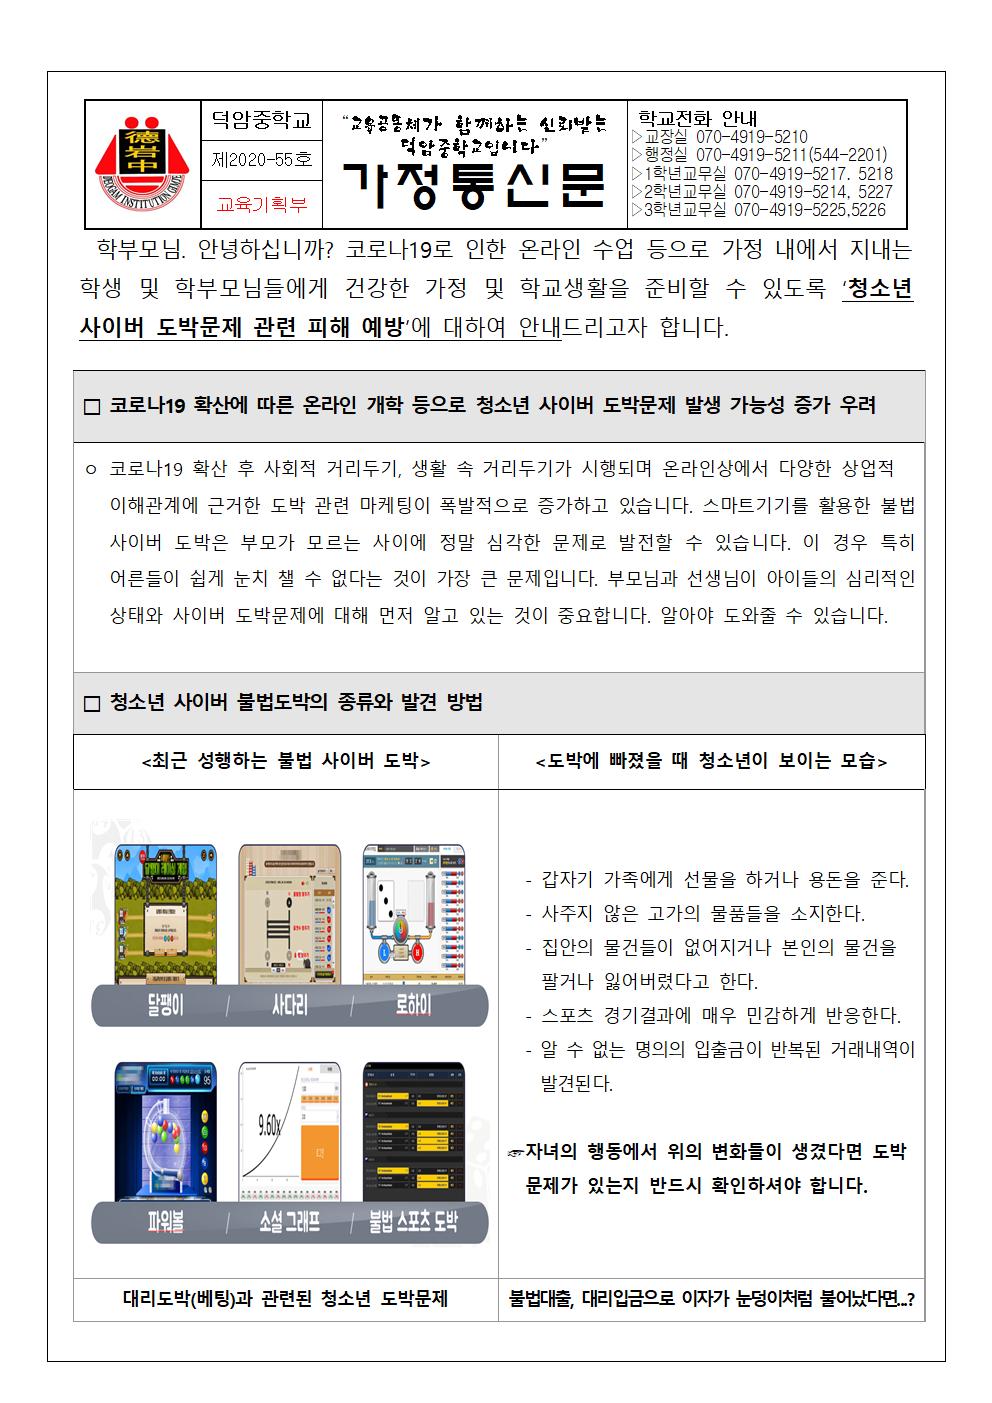 청소년 사이버 도박문제 관련 피해 예방 안내(가정통신문)001